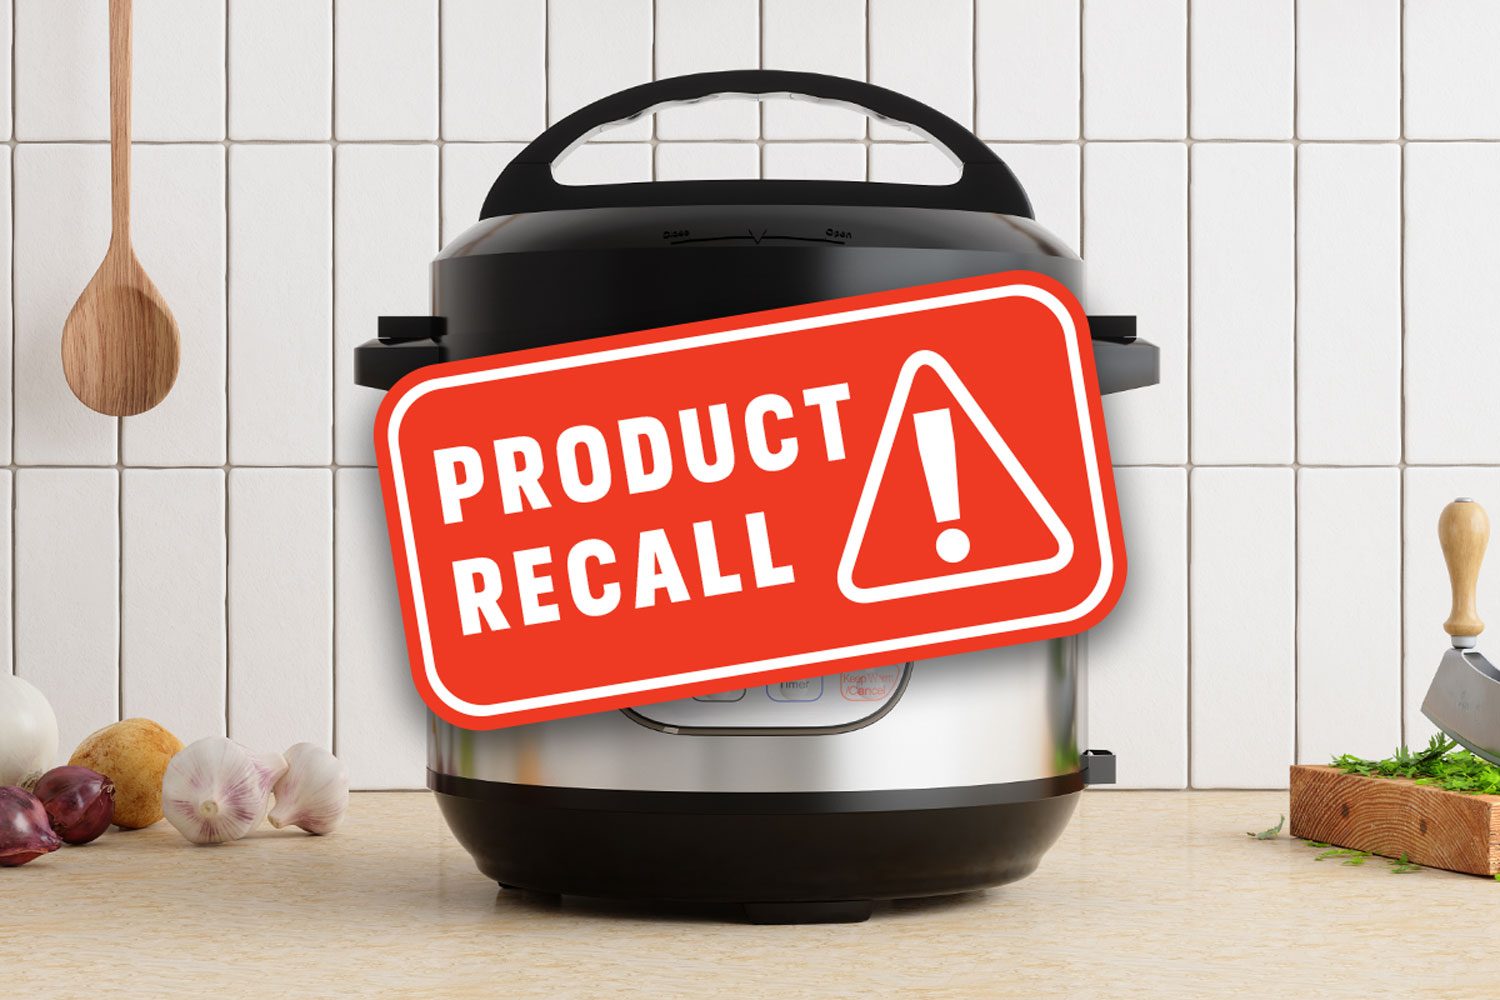 Best Buy Recalls Insignia Pressure Cookers Due To Burn Hazard